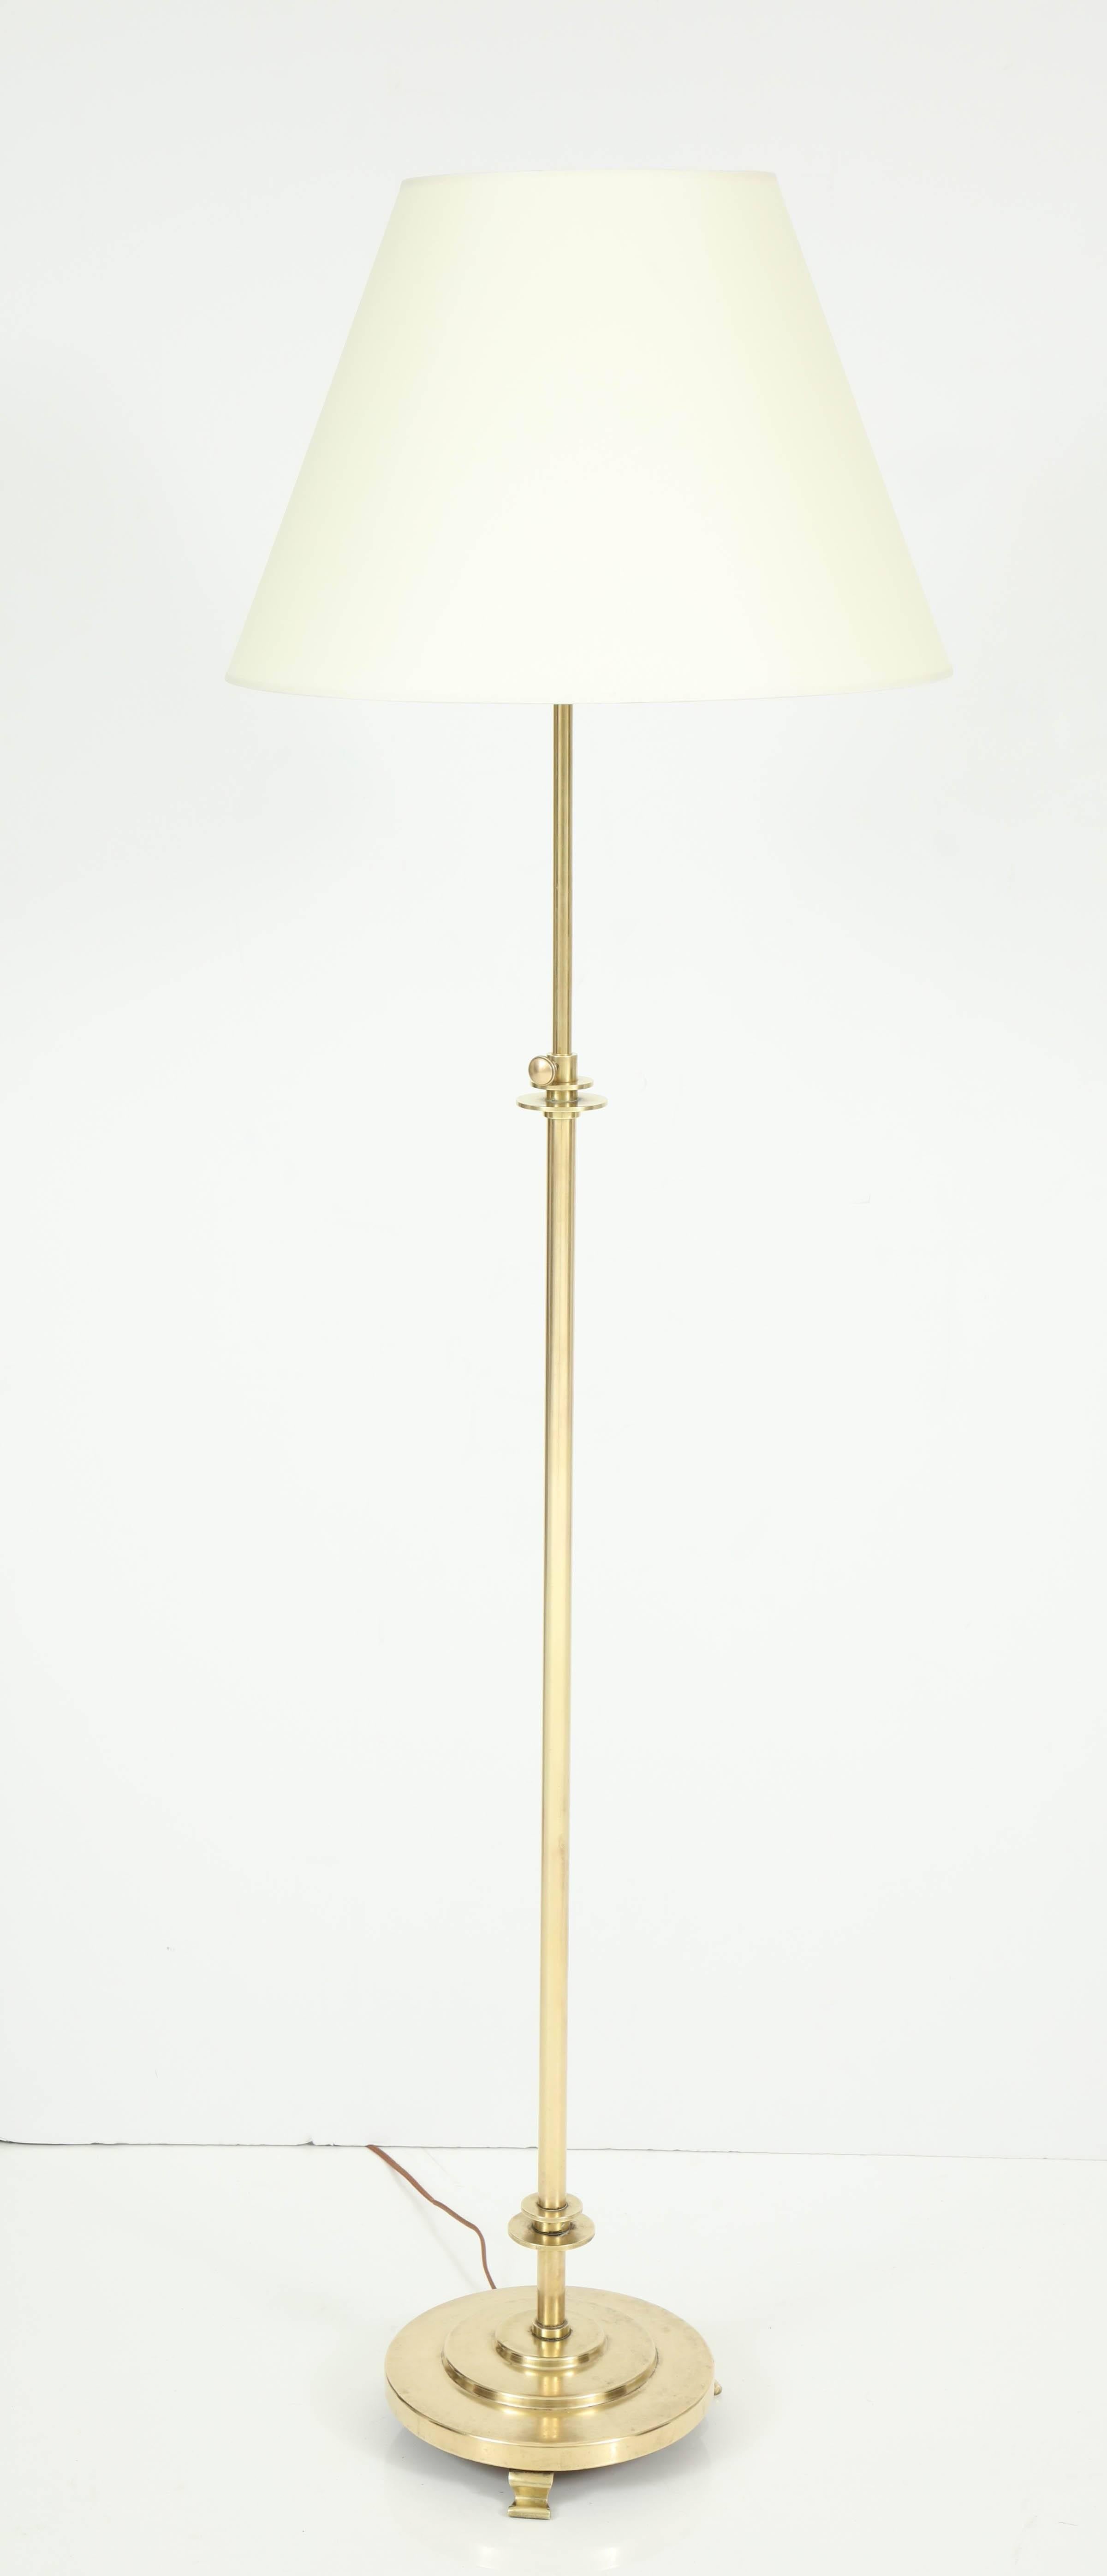 Danish Copenhagen Brass Floor Lamp, circa 1930s